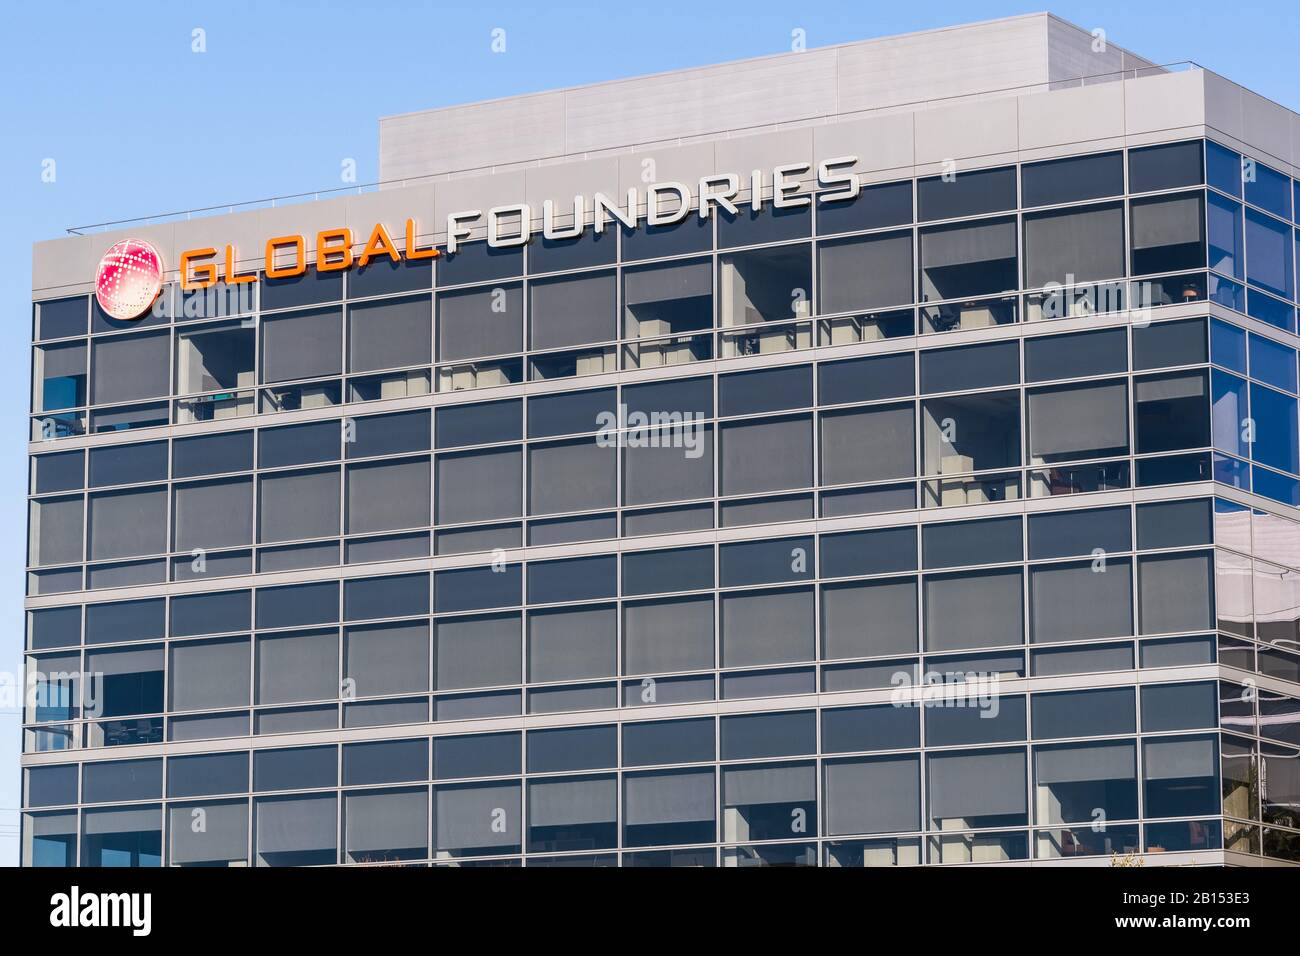 18 febbraio 2020 Santa Clara / CA / USA - sede GlobalFoundries nella Silicon Valley; GlobalFoundries è una fonderia americana di semiconduttori creata da Foto Stock